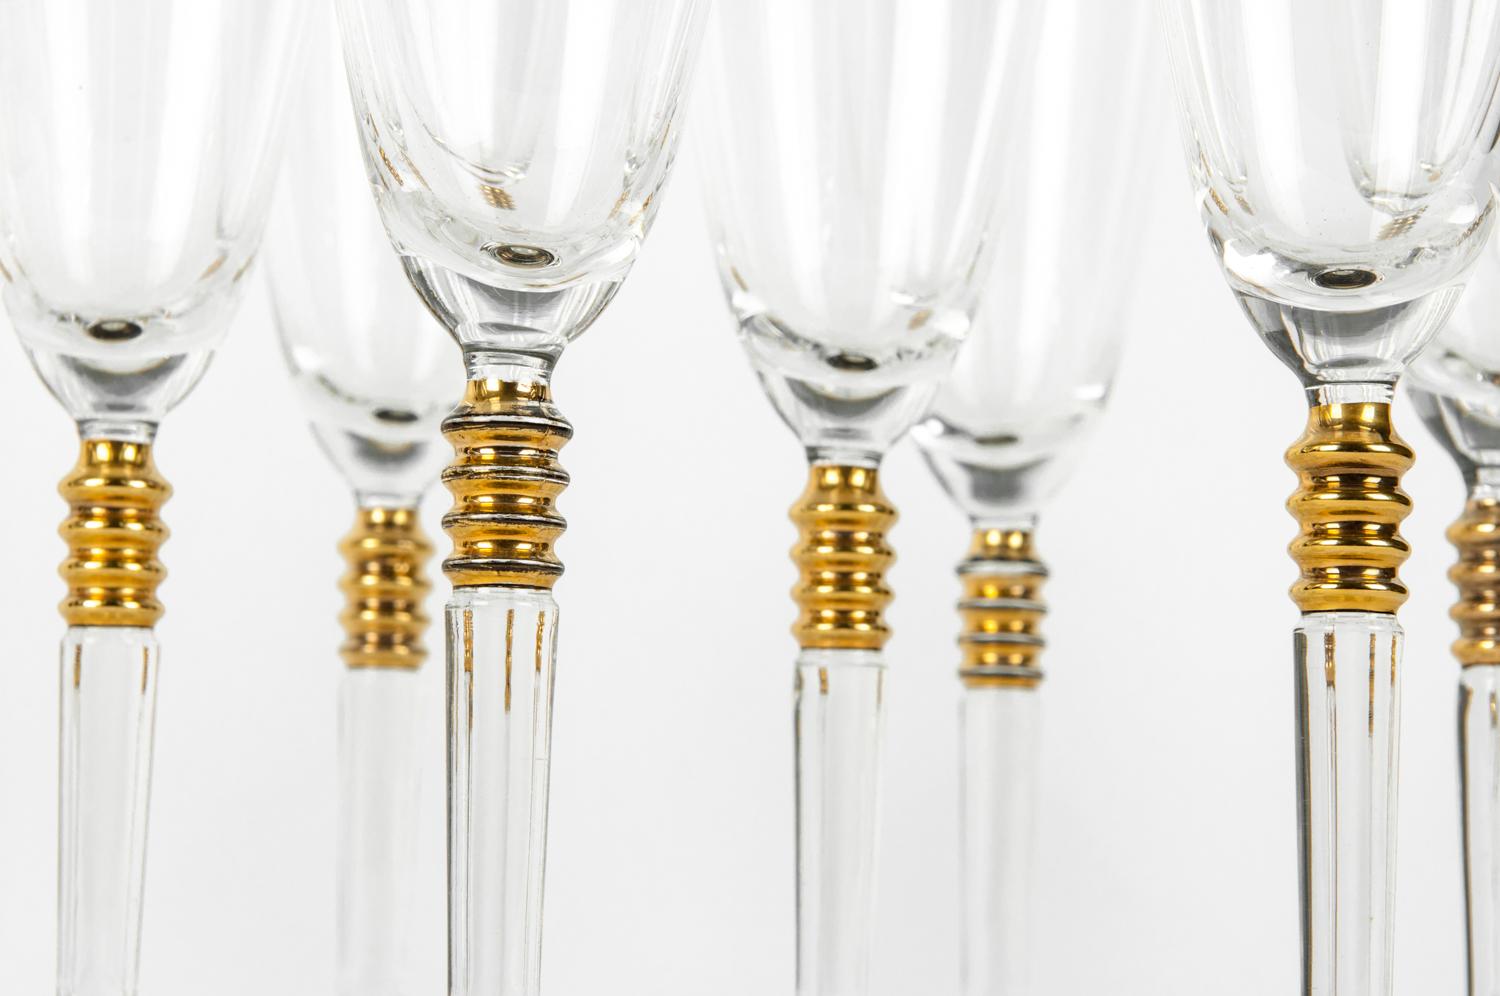 Vintage Crystal with Gold Design Champagne Flute Set of 12 2